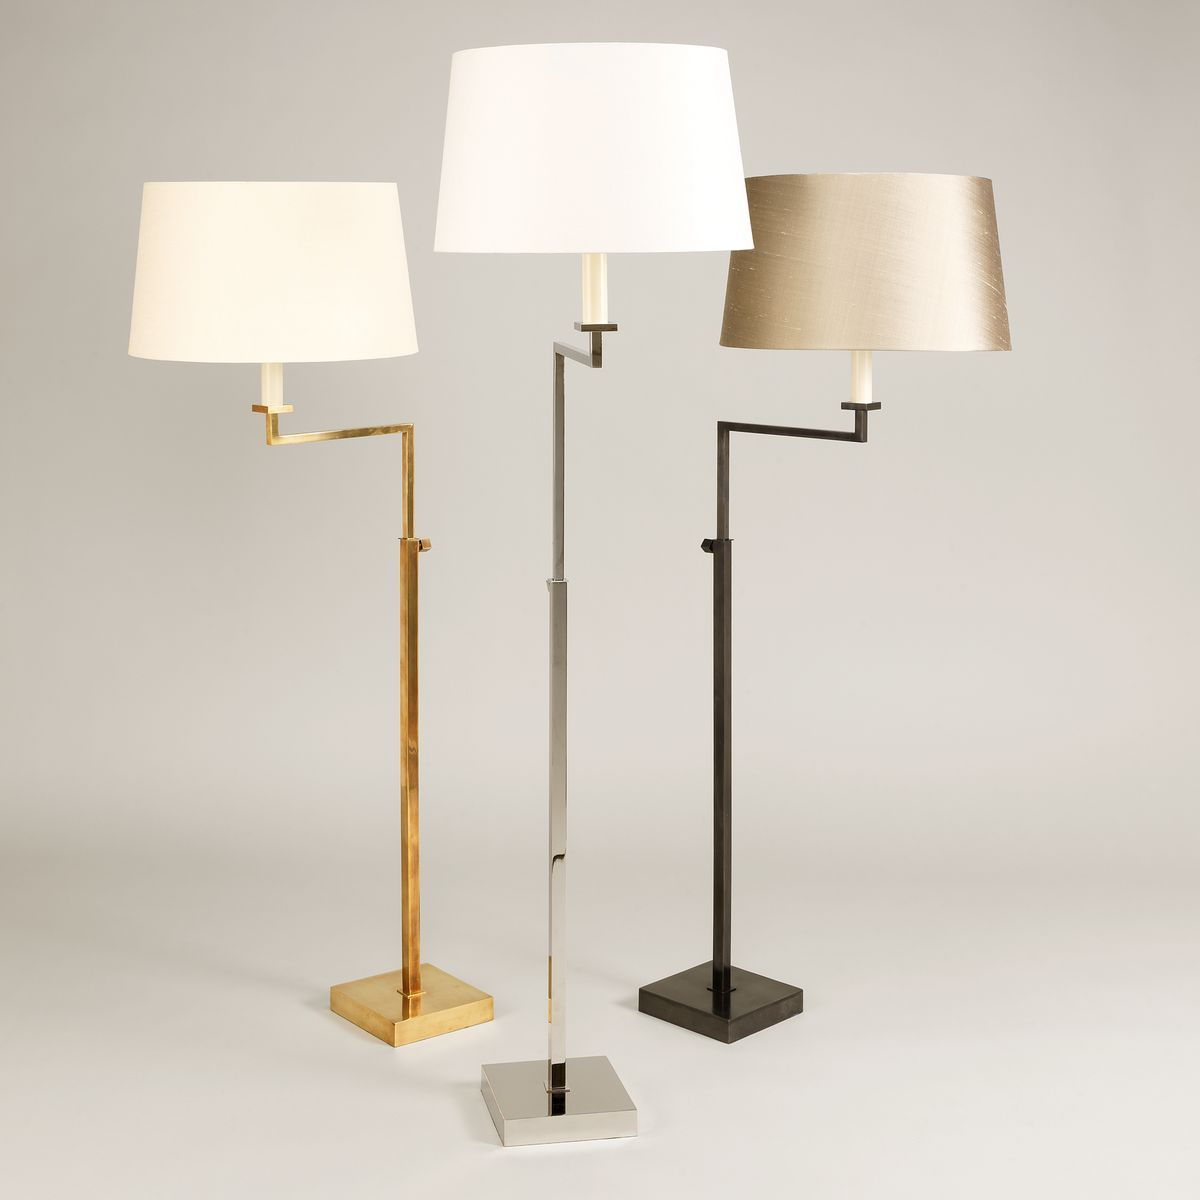 Ludlow Floor Lamp Vaughan Designs Lighting In 2019 pertaining to size 1200 X 1200